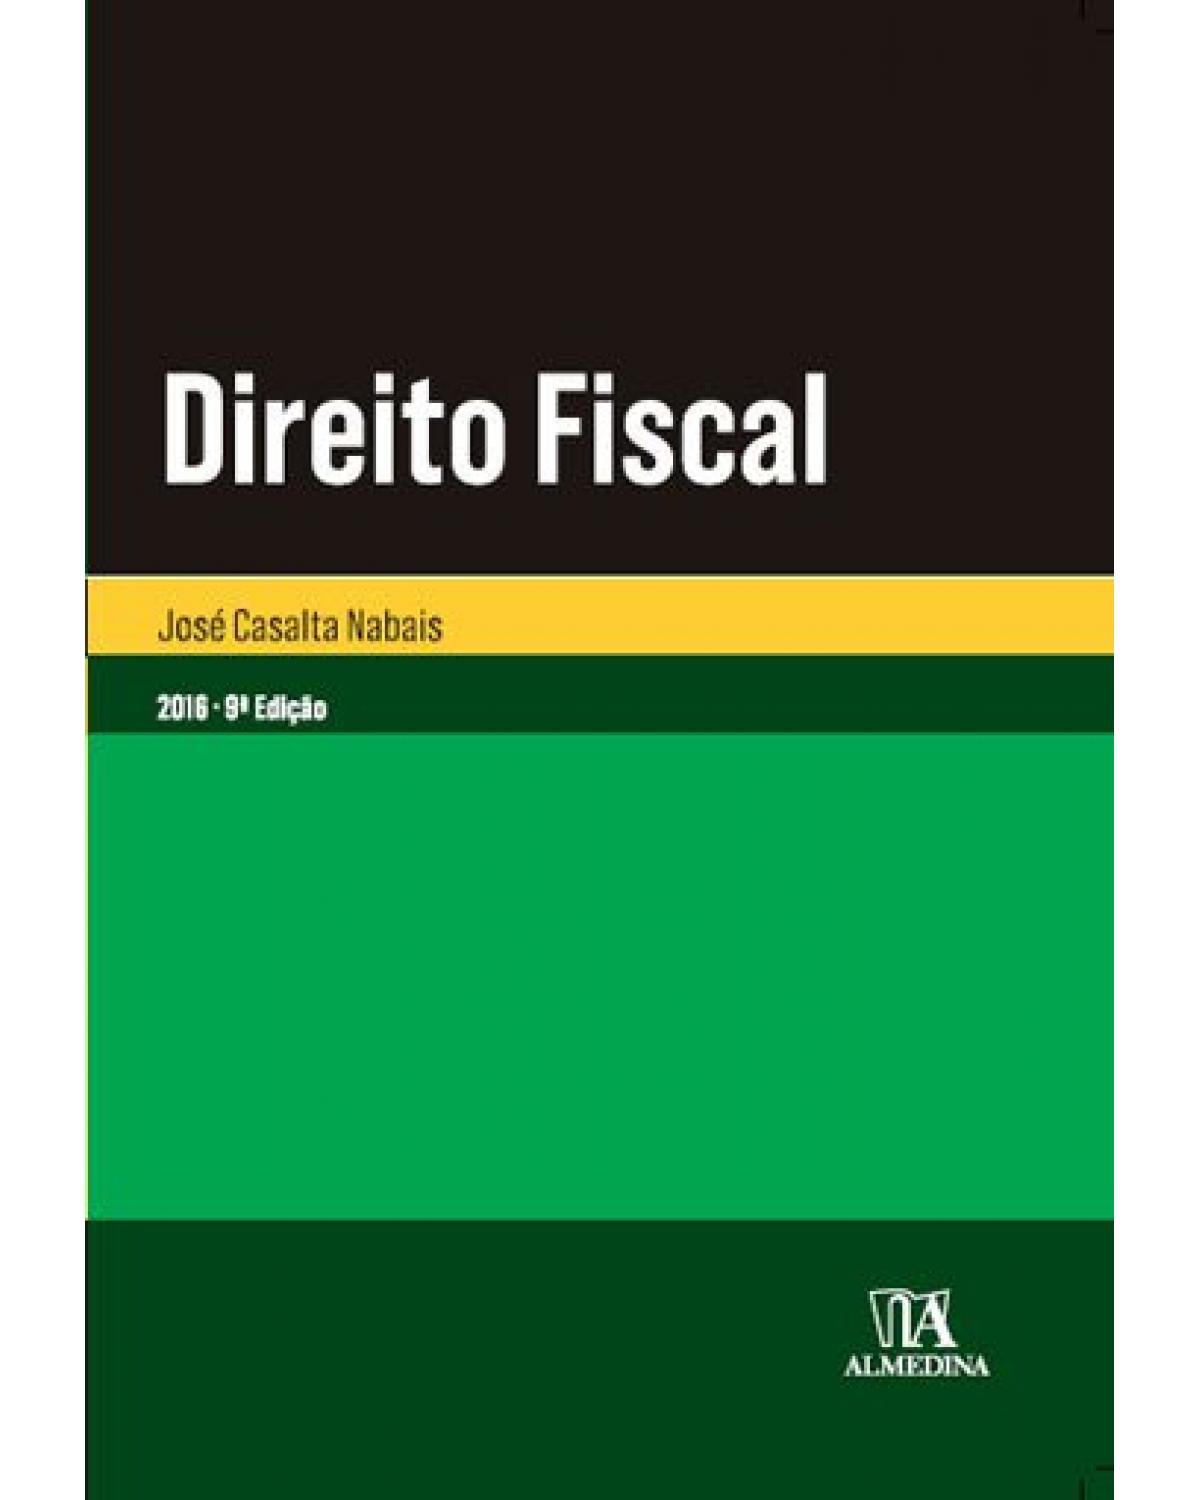 Direito fiscal - 9ª Edição | 2016